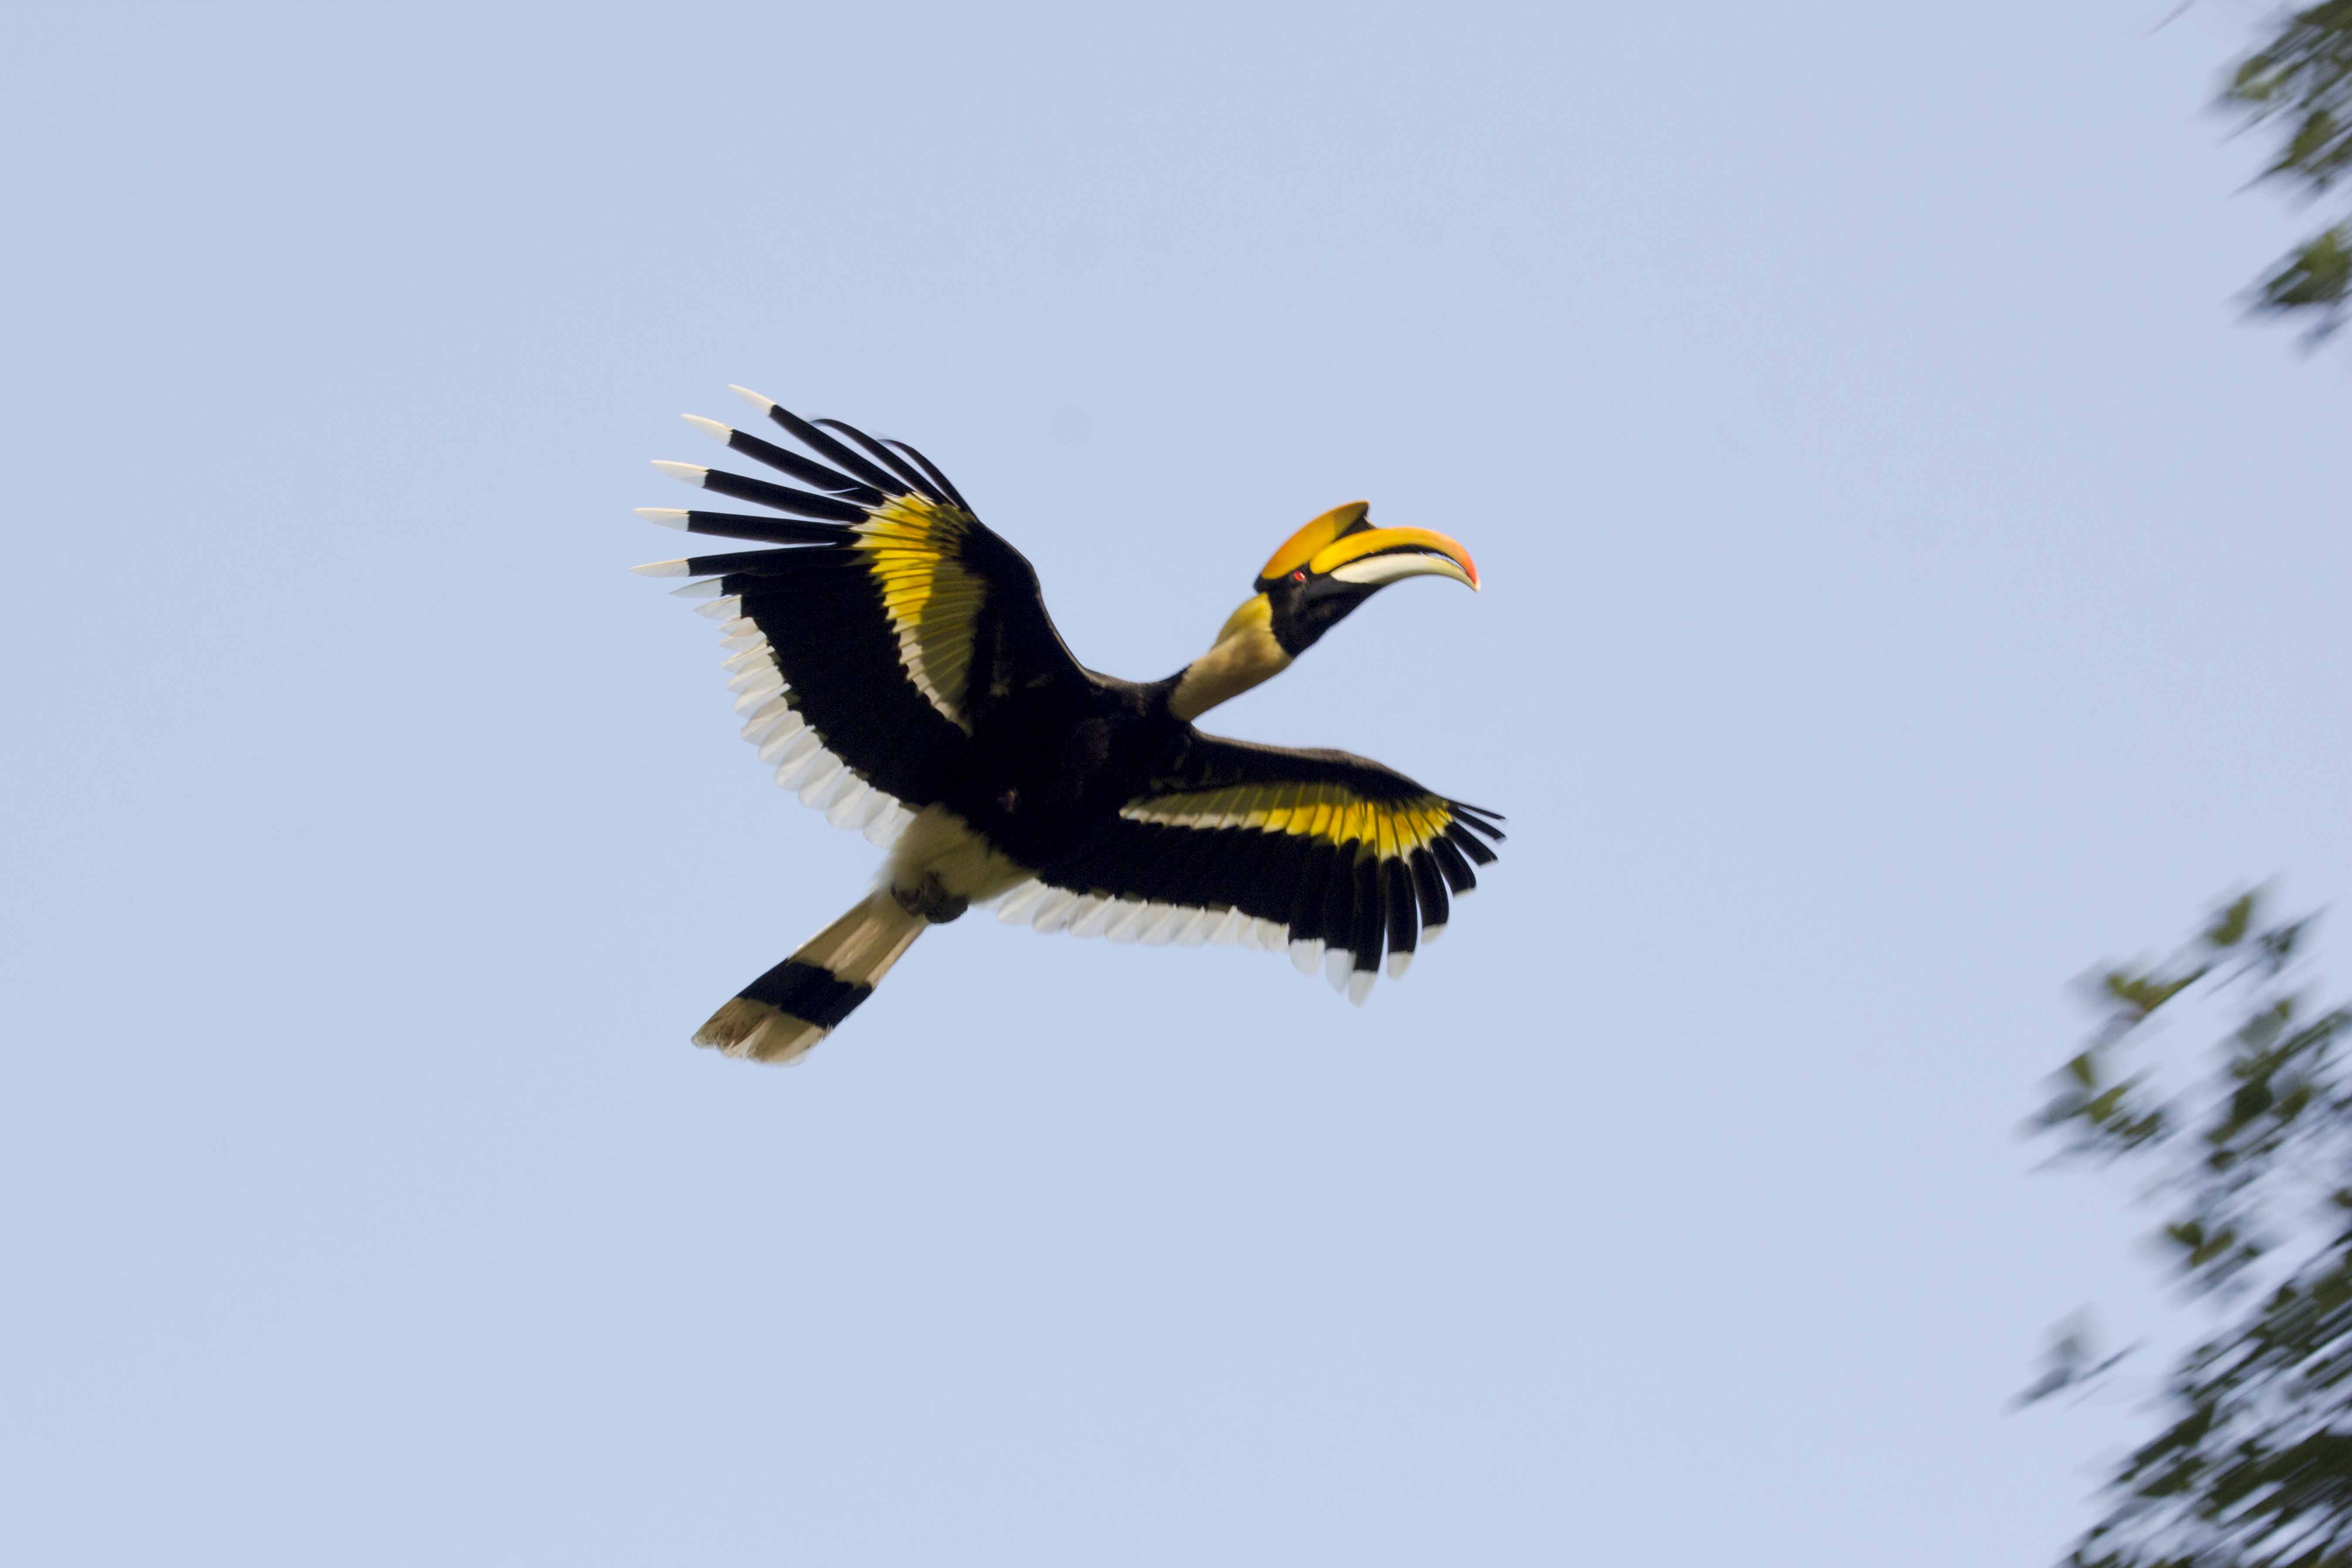 Dandeli Birding Tour: Home of Hornbills